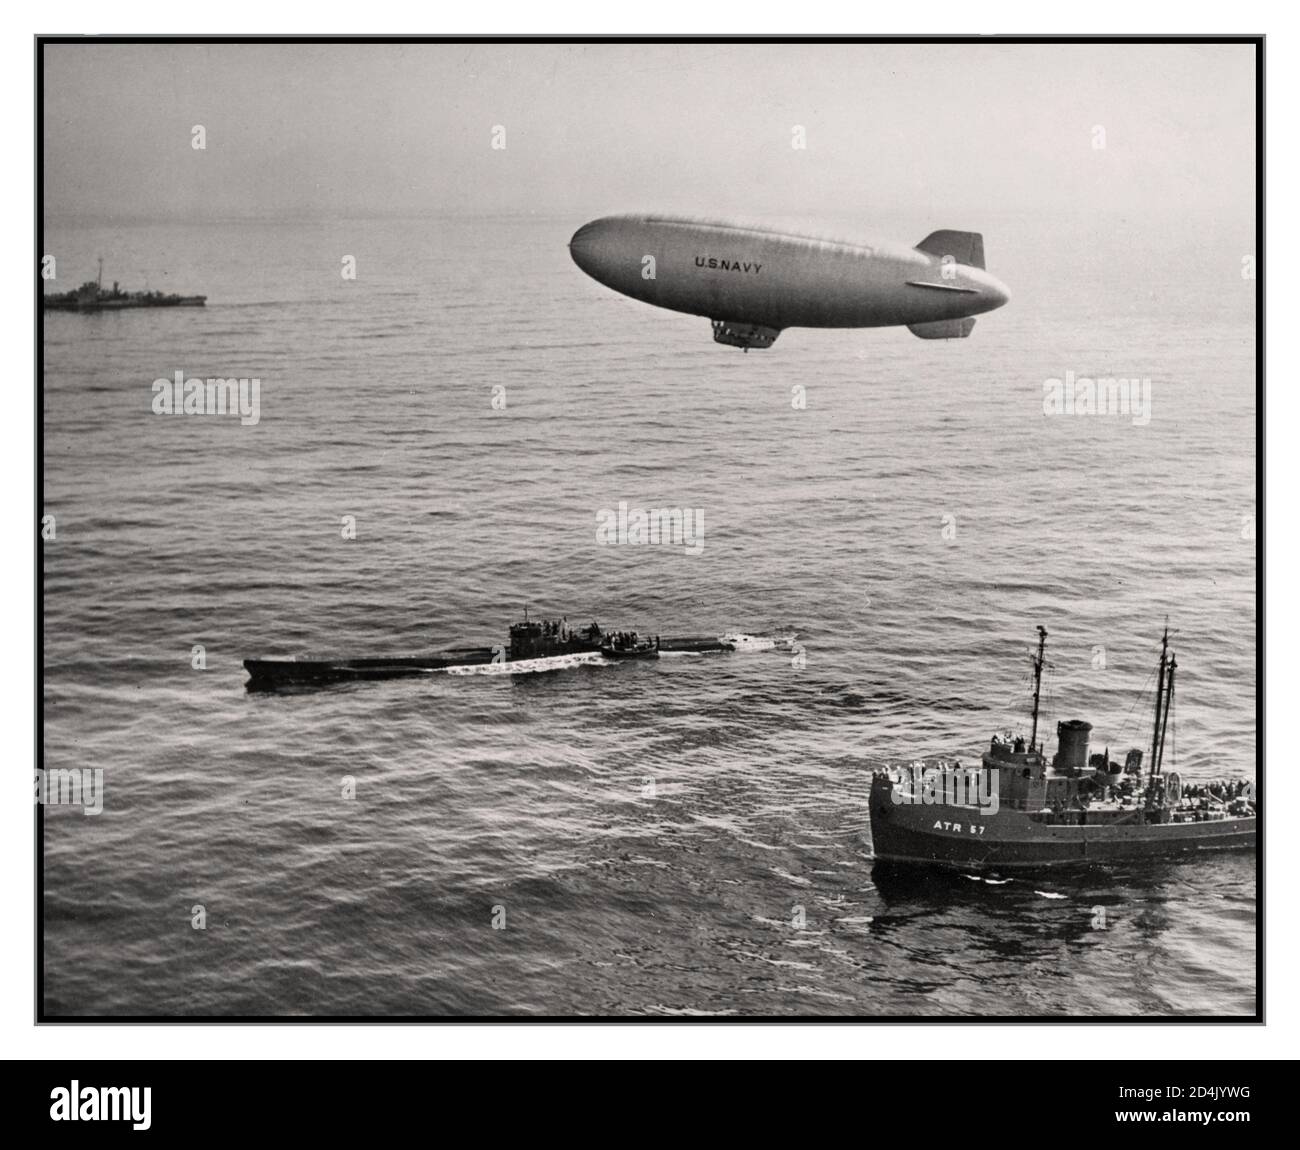 Nazi-Deutschland-U-858, unter enger Begleitung, einschließlich des Aufklärungsballons der US Navy, dampft nach Delaware, nachdem sie sich im Mai 1945 vor Cape May gestellt hatte. Stockfoto